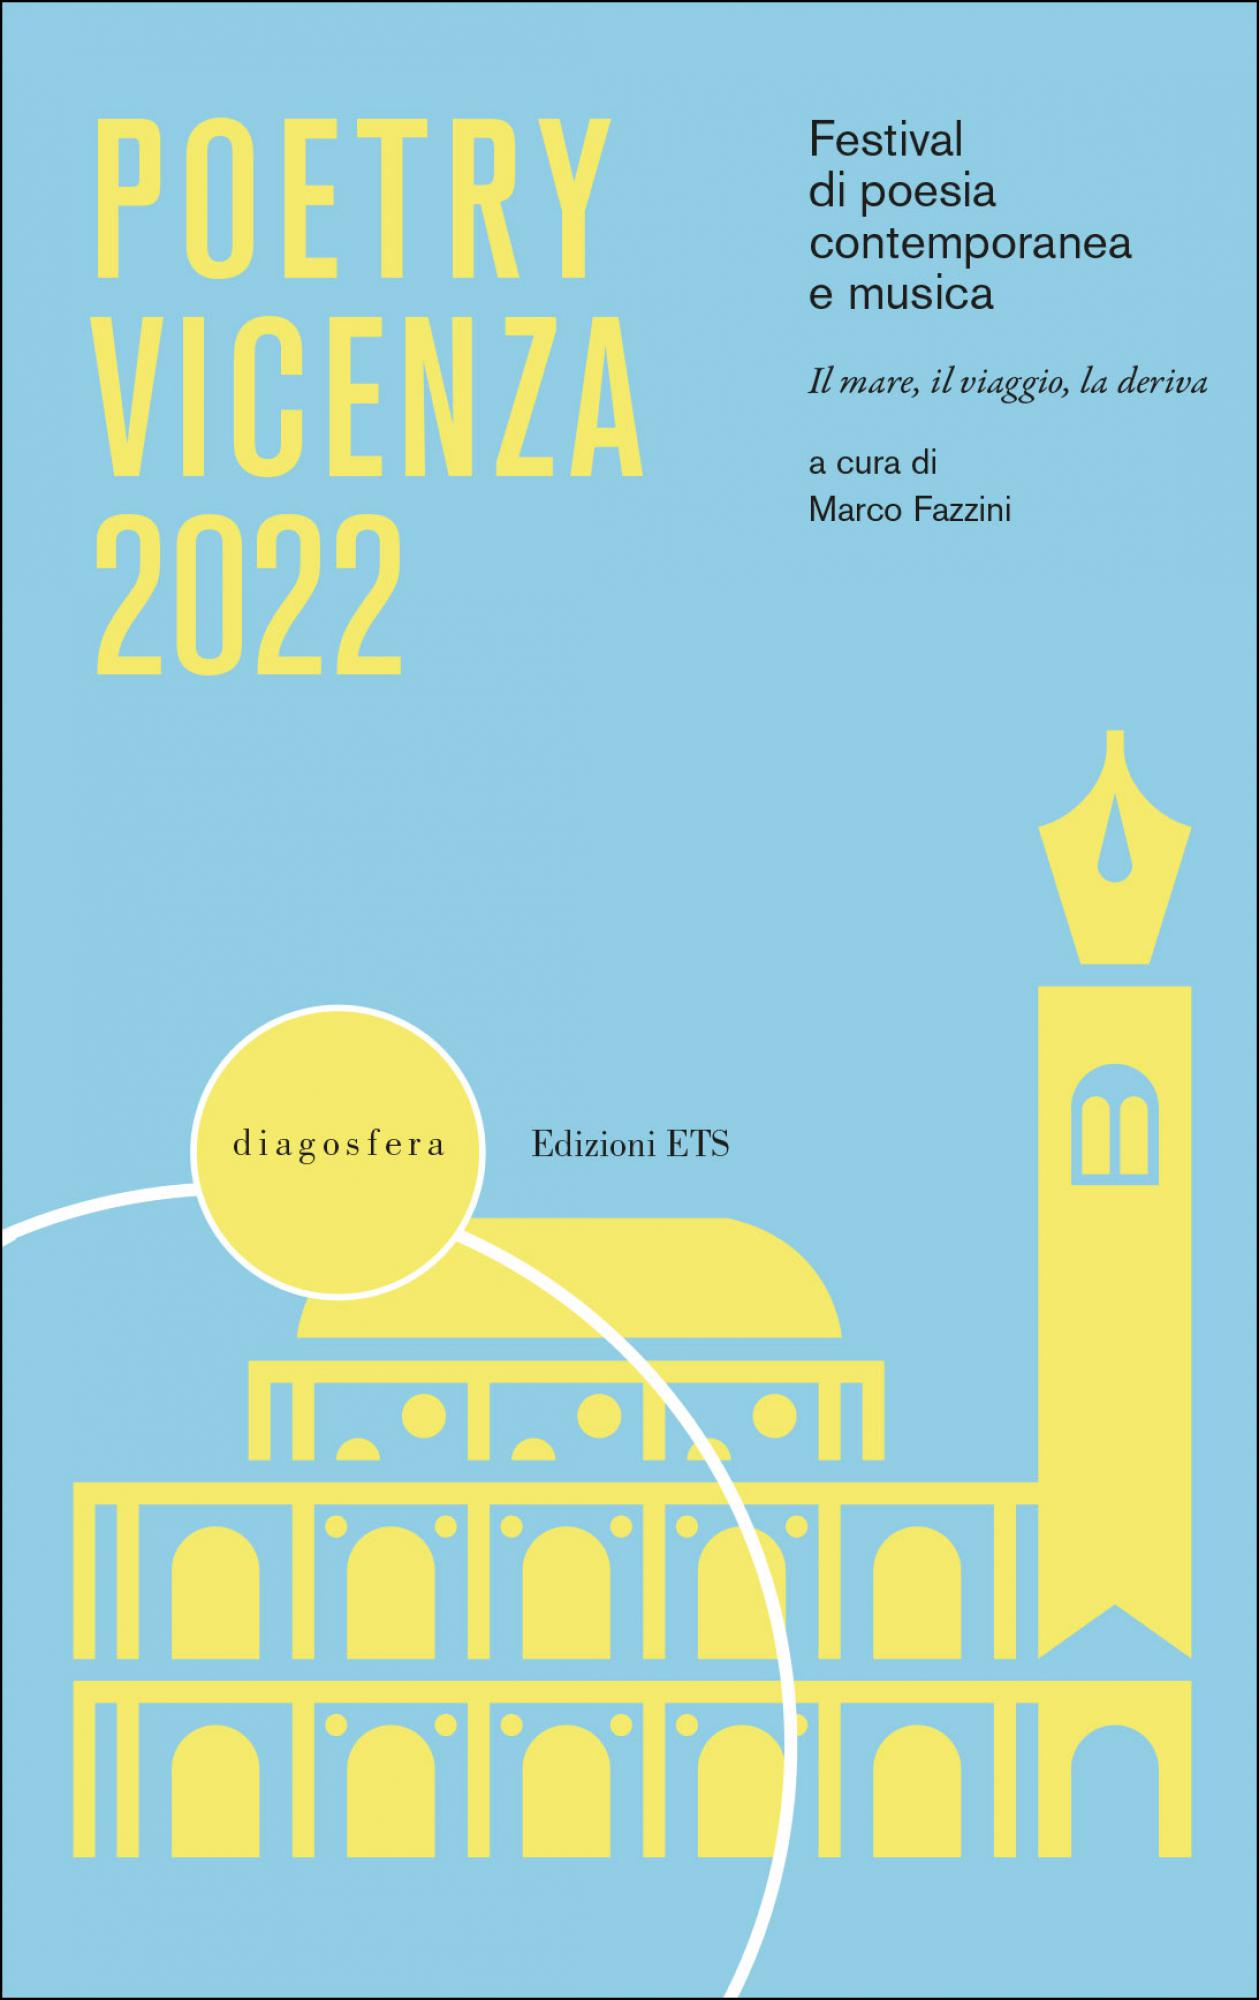 Poetry Vicenza 2022.Festival di poesia contemporanea e musica. Il mare, il viaggio, la deriva